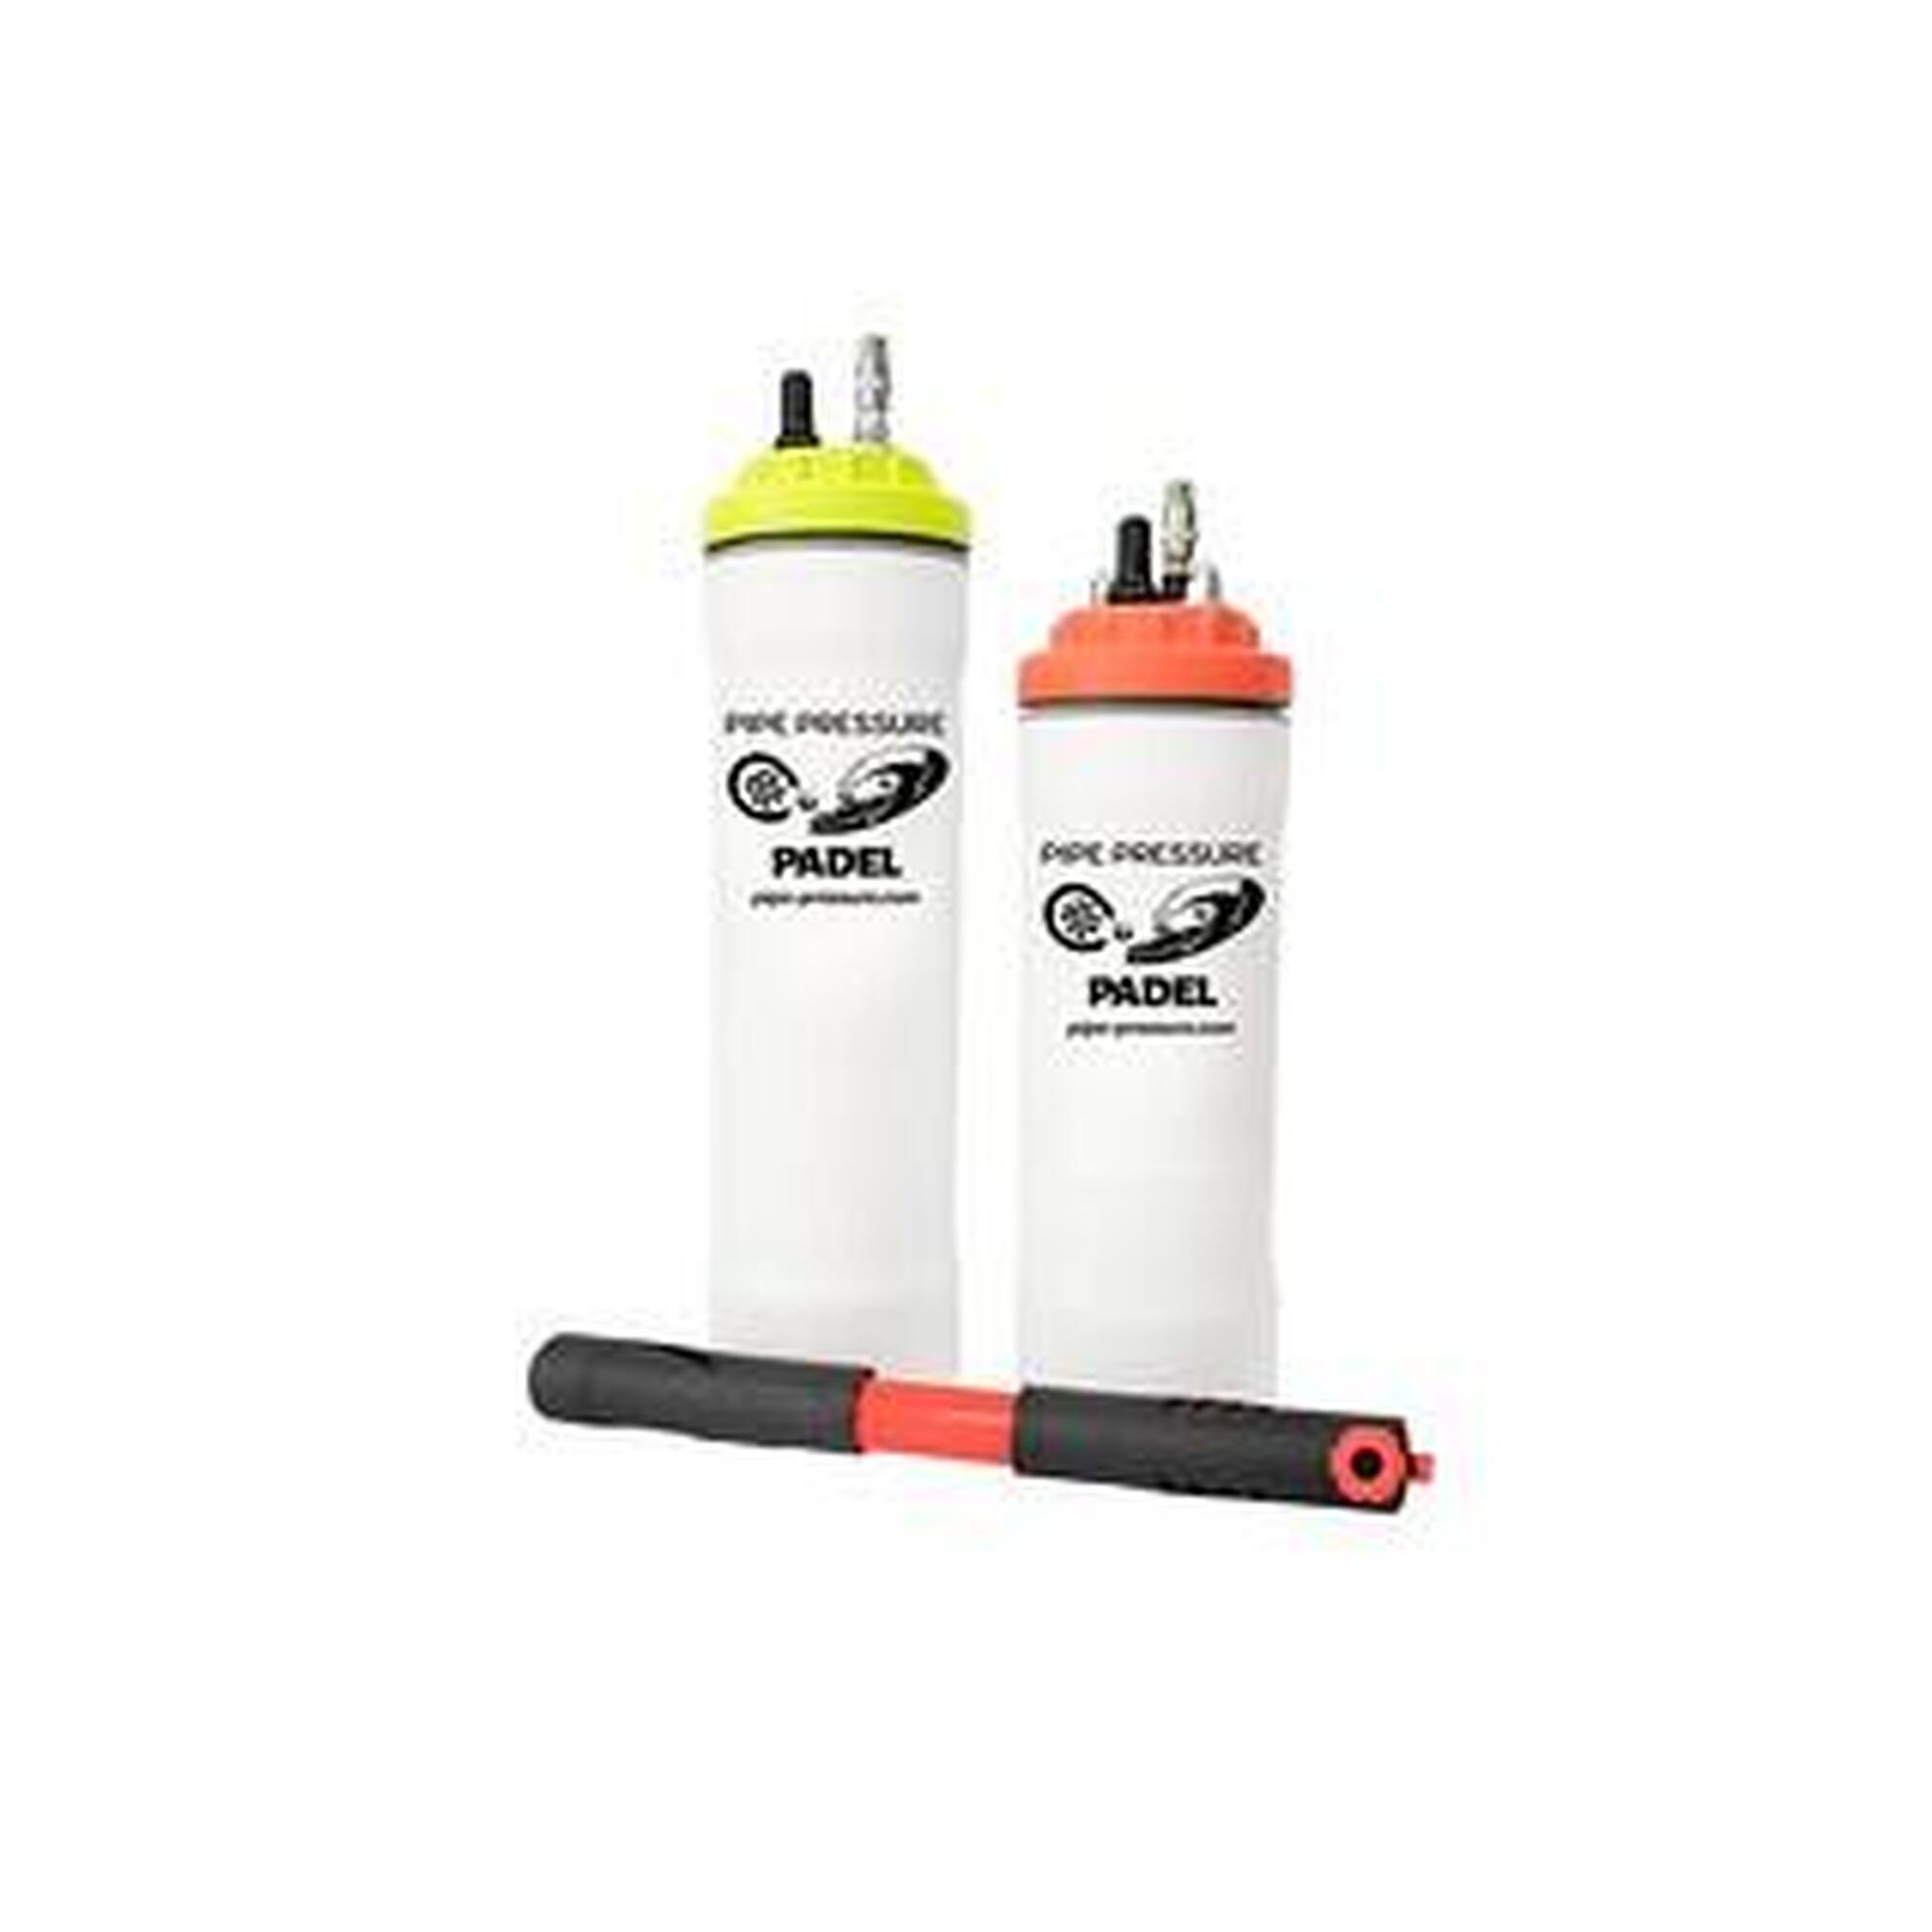 Pressurizzatore per padel e palline da tennis(4 palline con pompa)-colore rosso